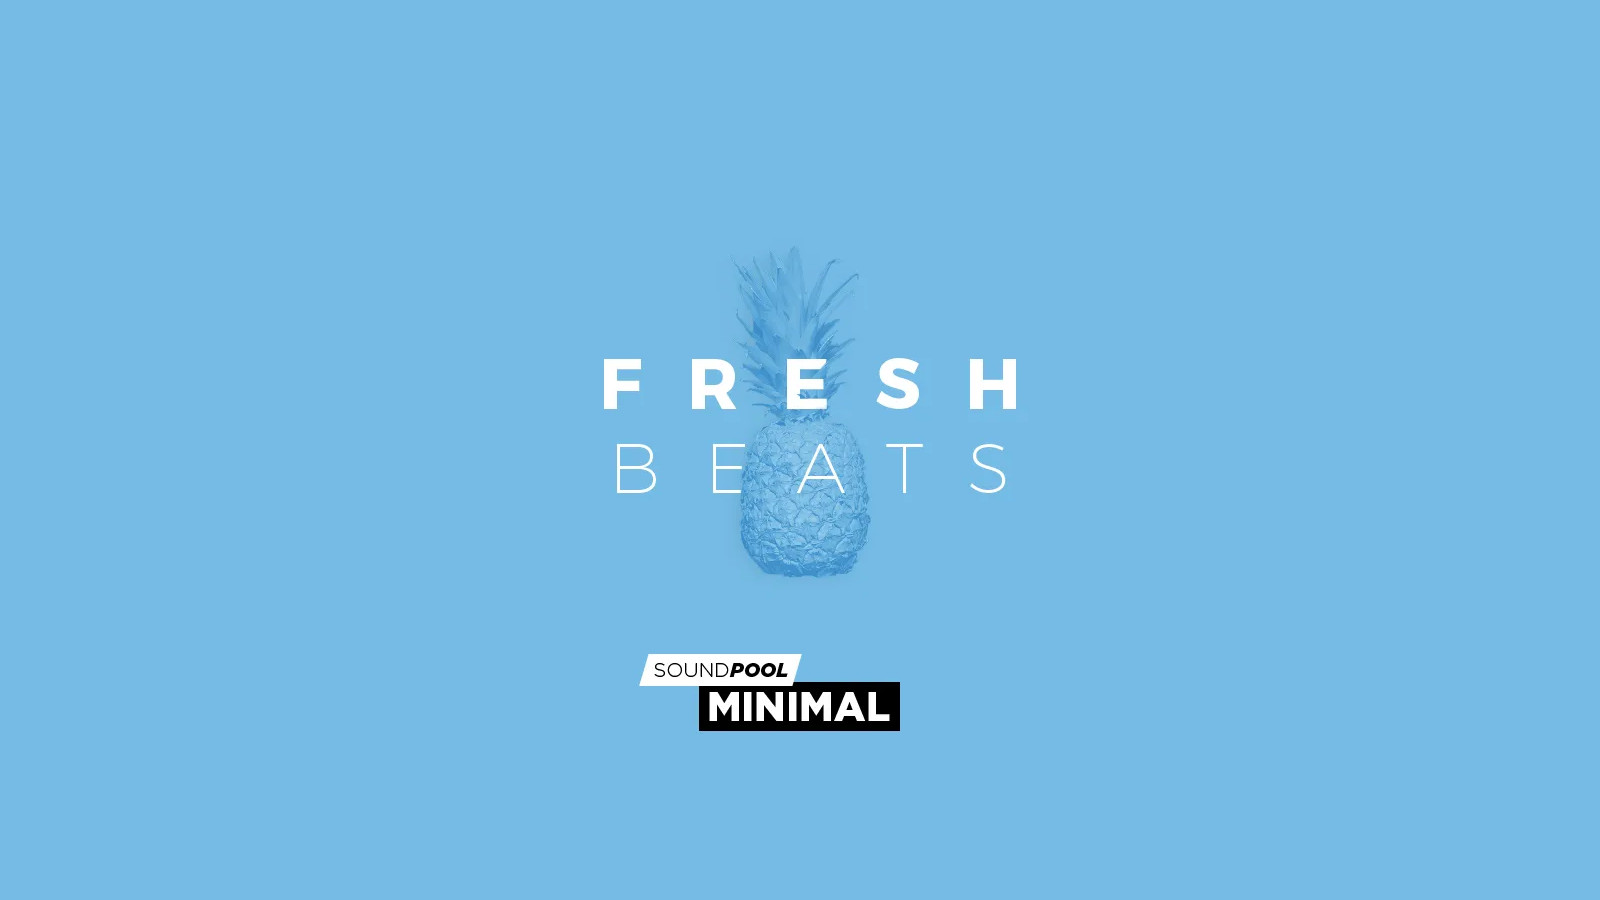 MAGIX Soundpool Fresh Beats ProducerPlanet CD Key, $5.65